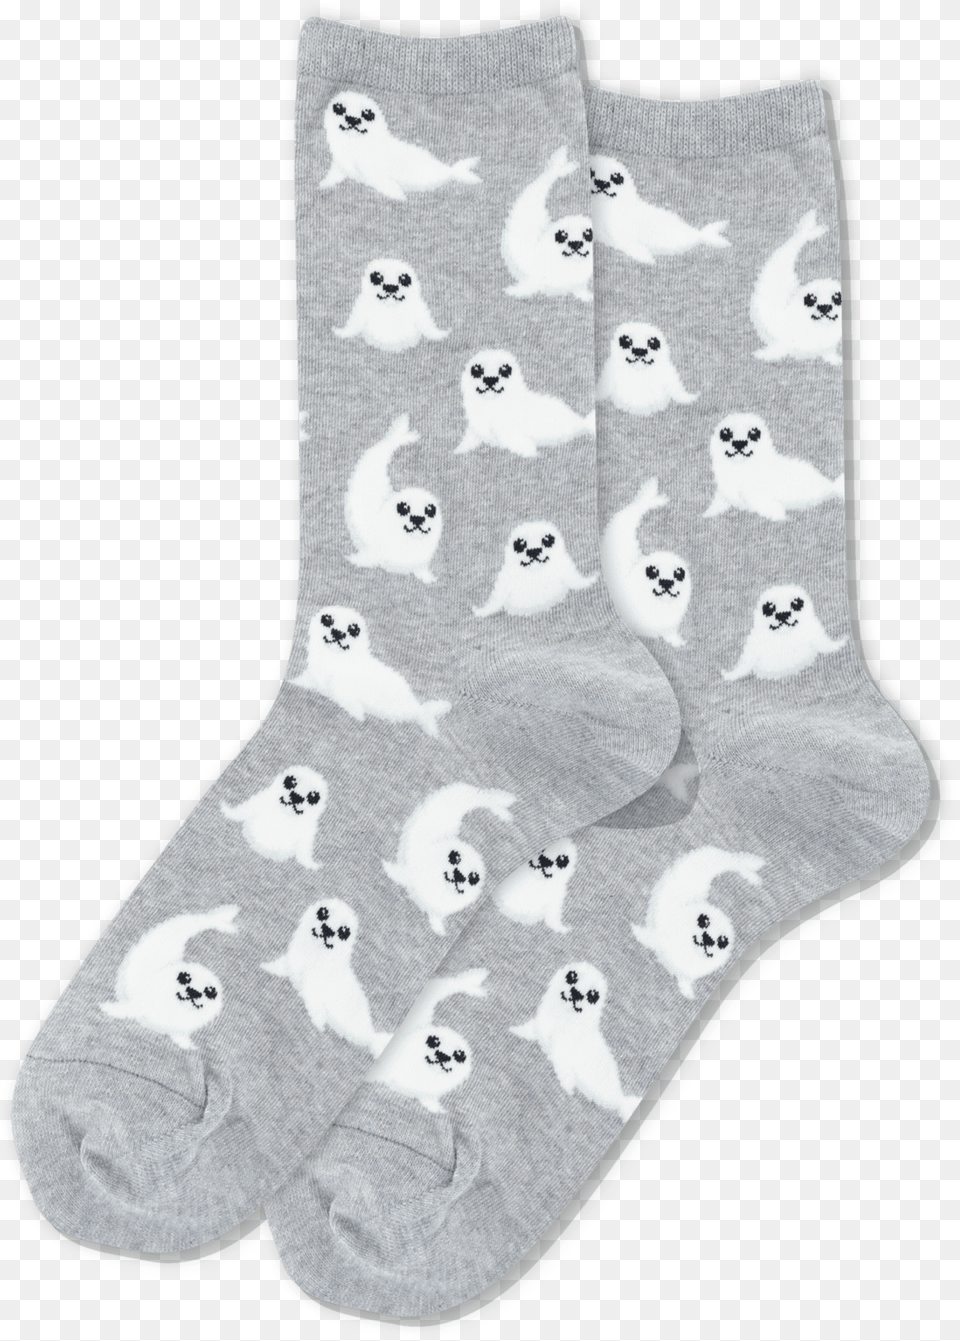 Sock, Clothing, Hosiery, Pet, Mammal Png Image